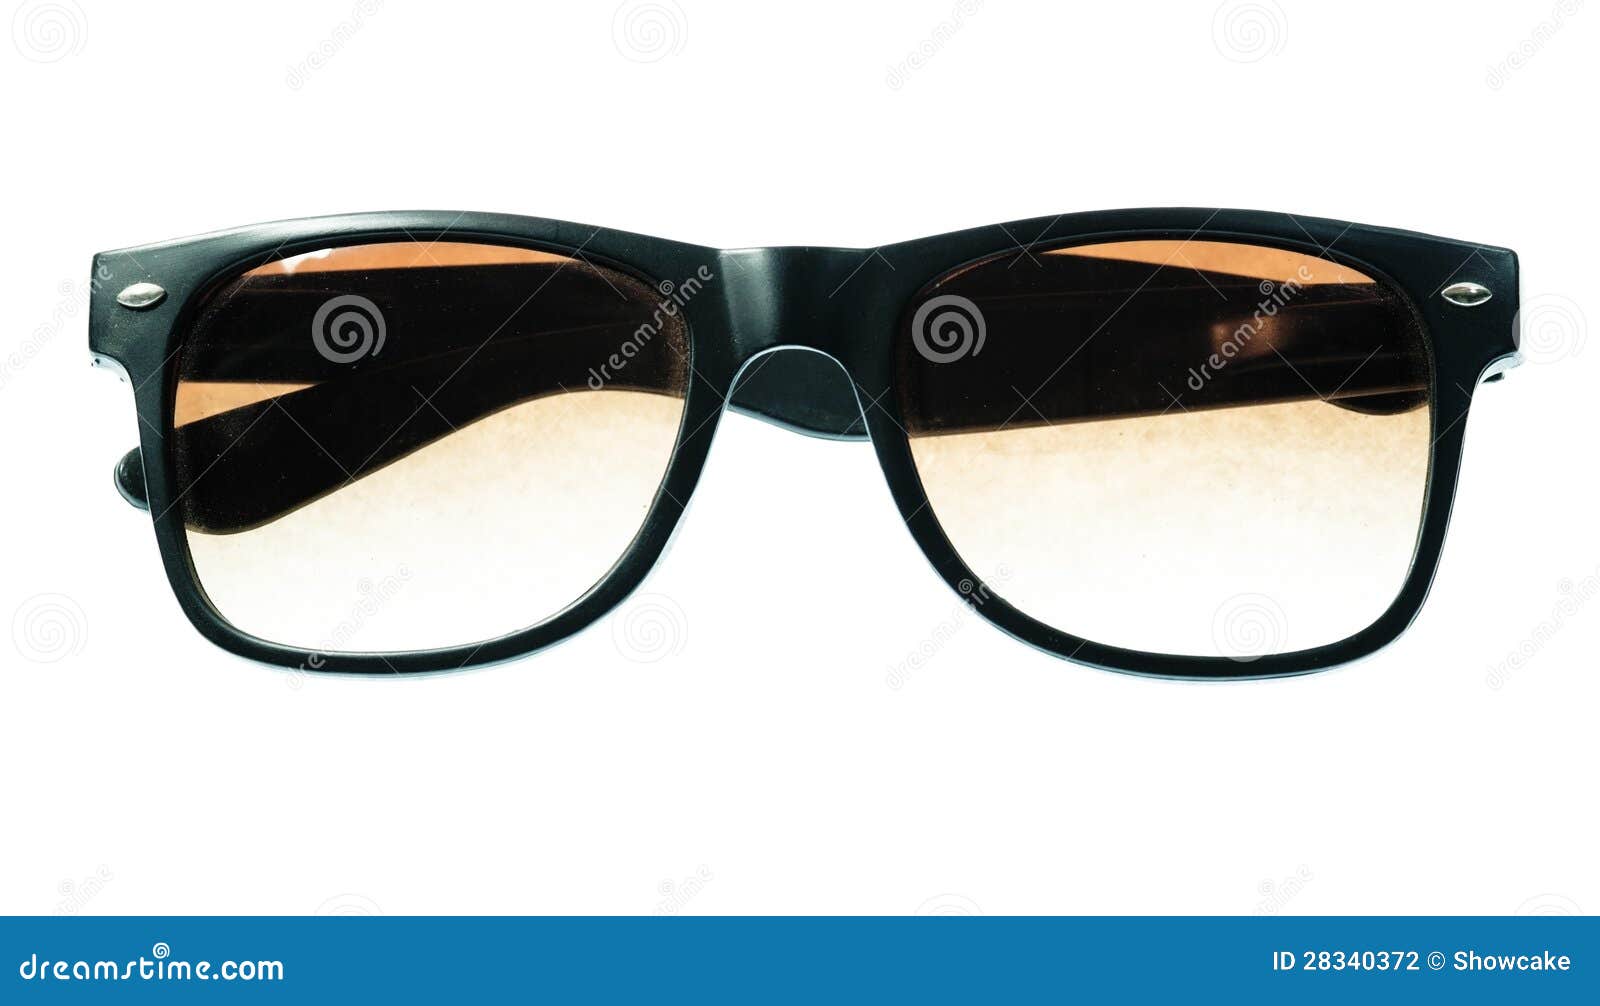 Sunglasses stock photo. Image of fashionable, eyewear - 28340372